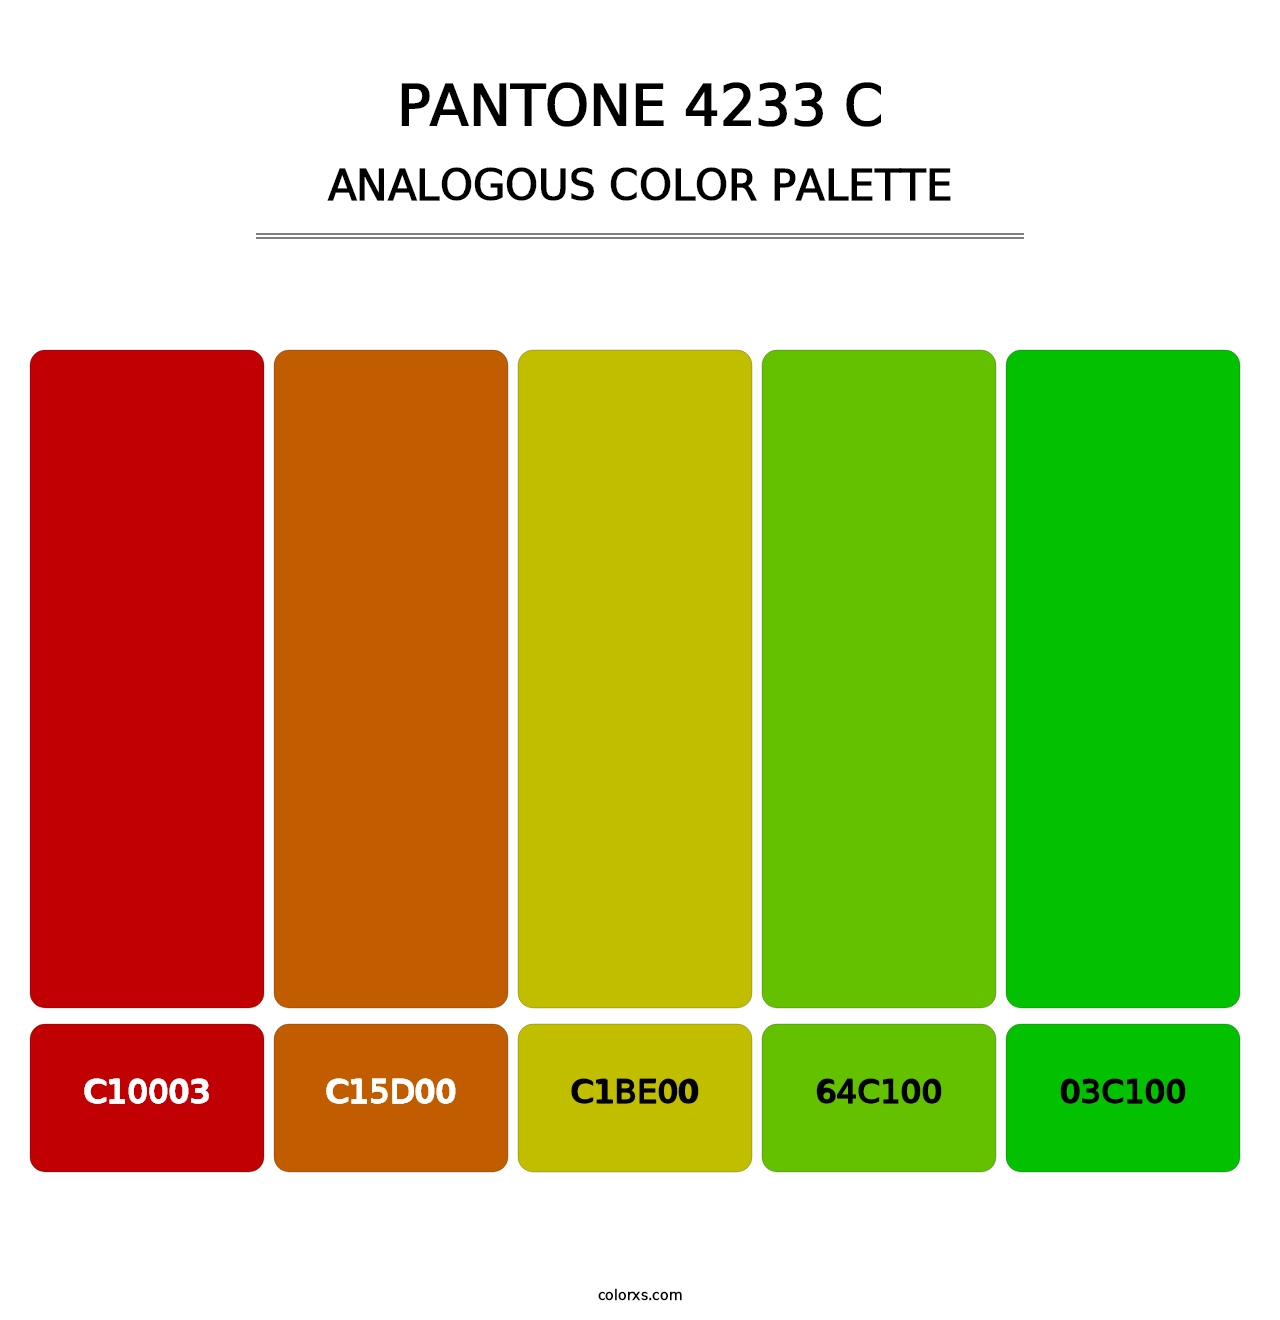 PANTONE 4233 C - Analogous Color Palette